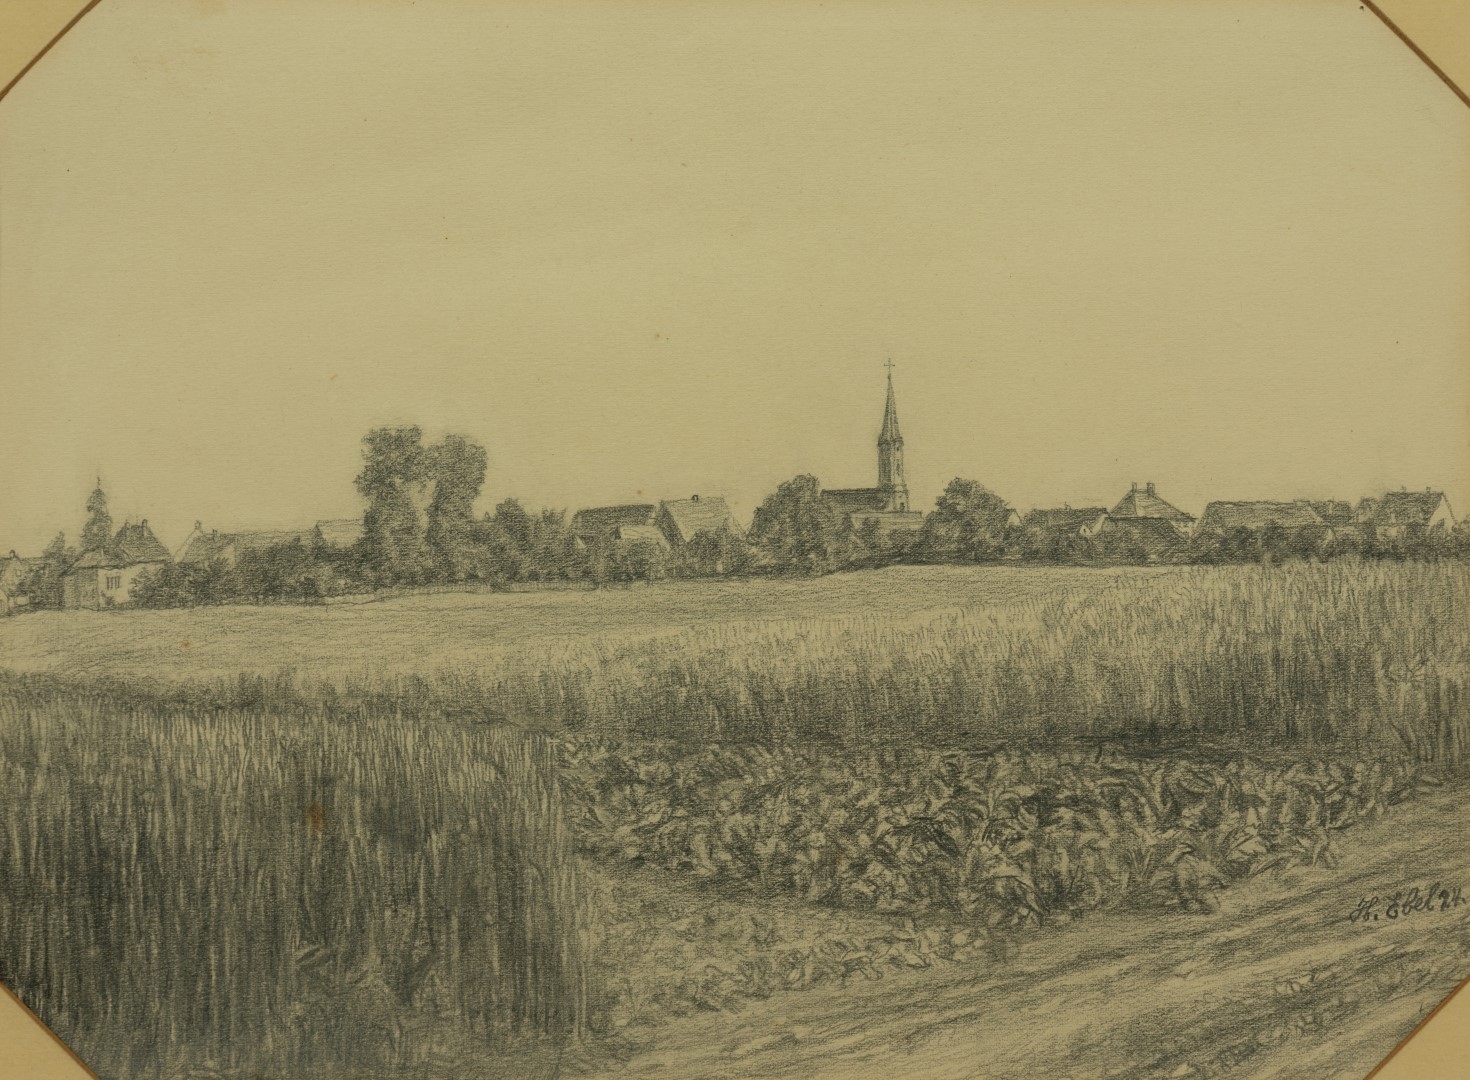 Village de Fegersheim, crayon sur carton, 24 x32 cm, collection particulire.